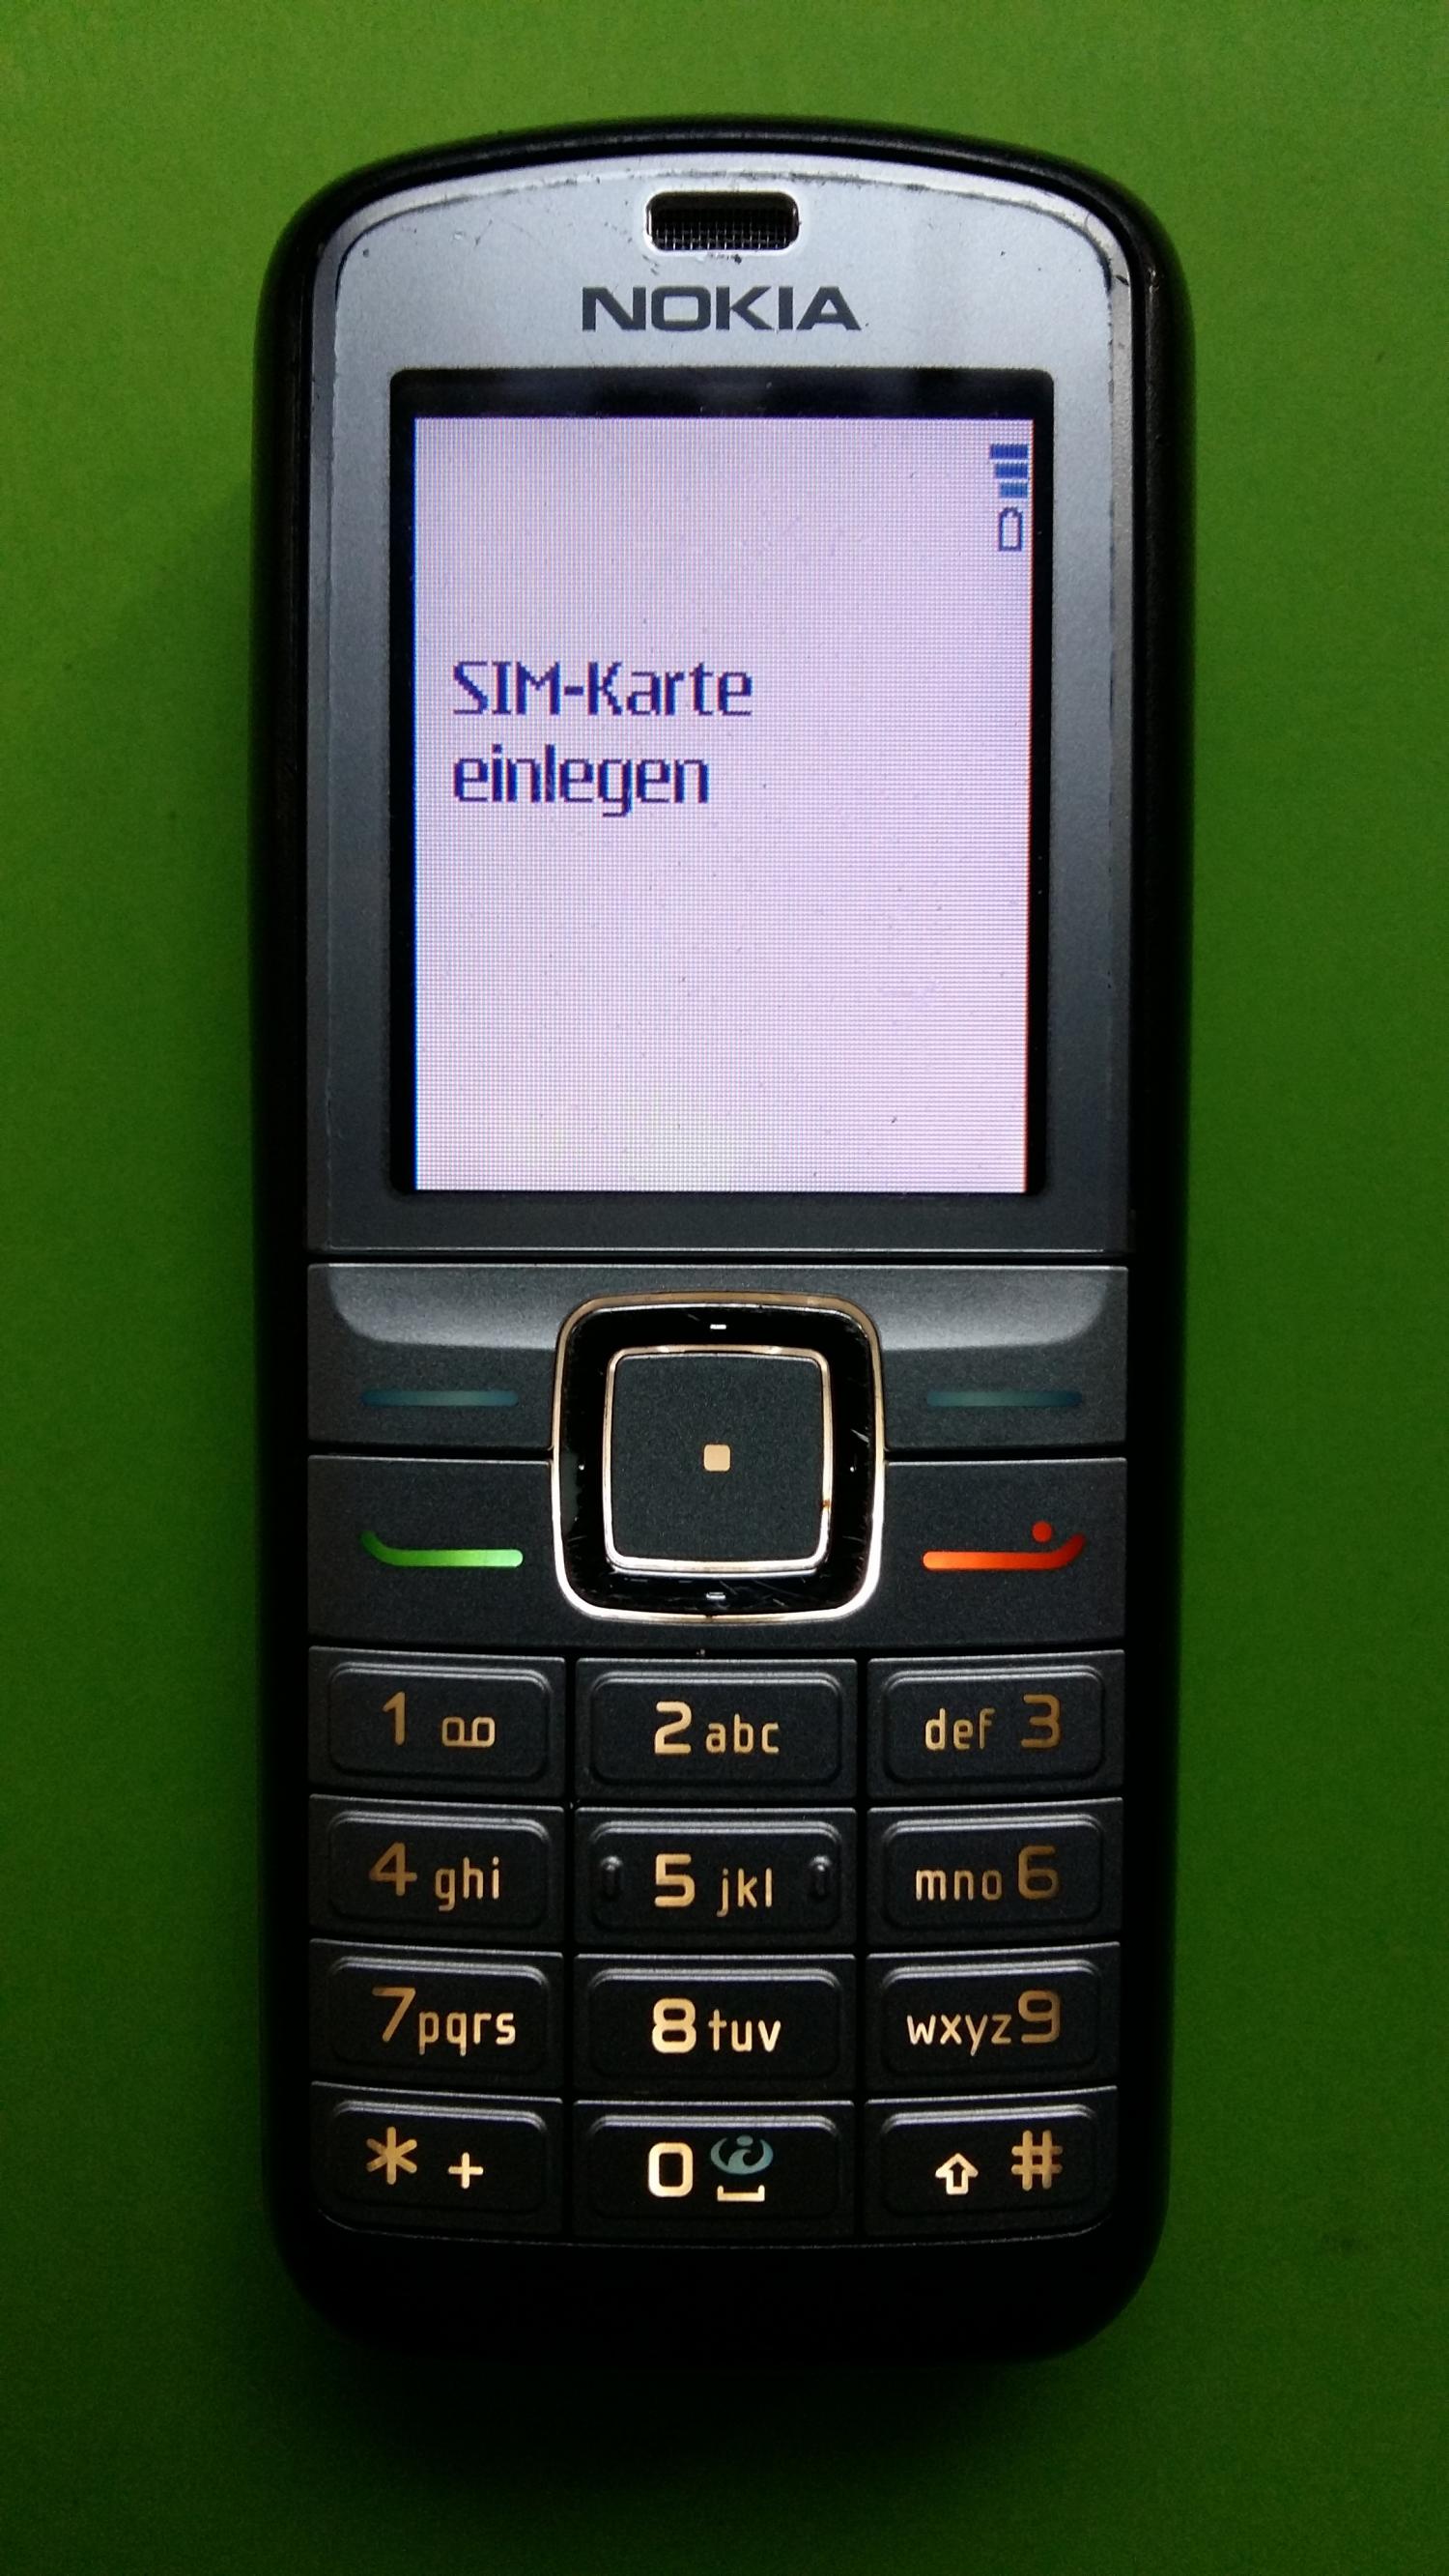 image-7307529-Nokia 6070 (1)1.jpg